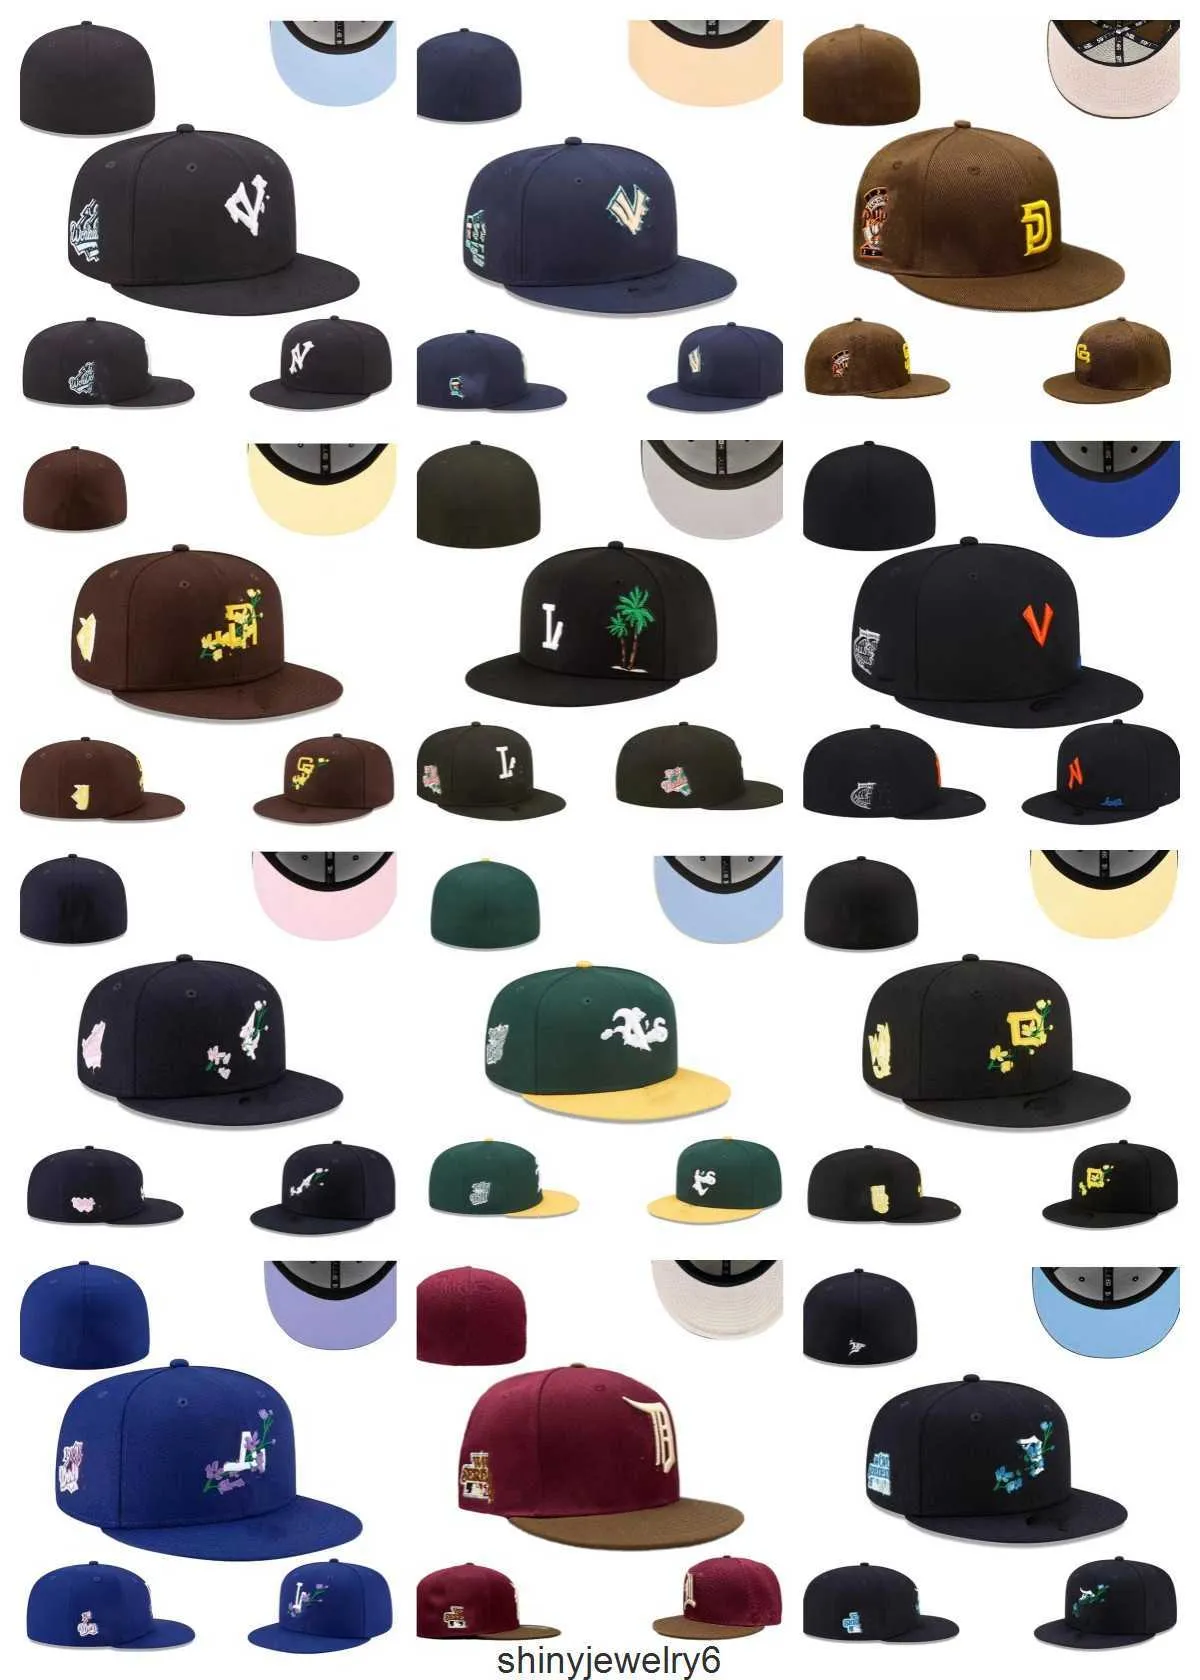 Gömme şapkalar tasarımcı boyutu en yeni renkler beyzbol düz kapakları kahverengi siyah renkli mektup nakış Chicago Tüm takımlar spor dünya yamalı tam kapalı dikişli şapkalar